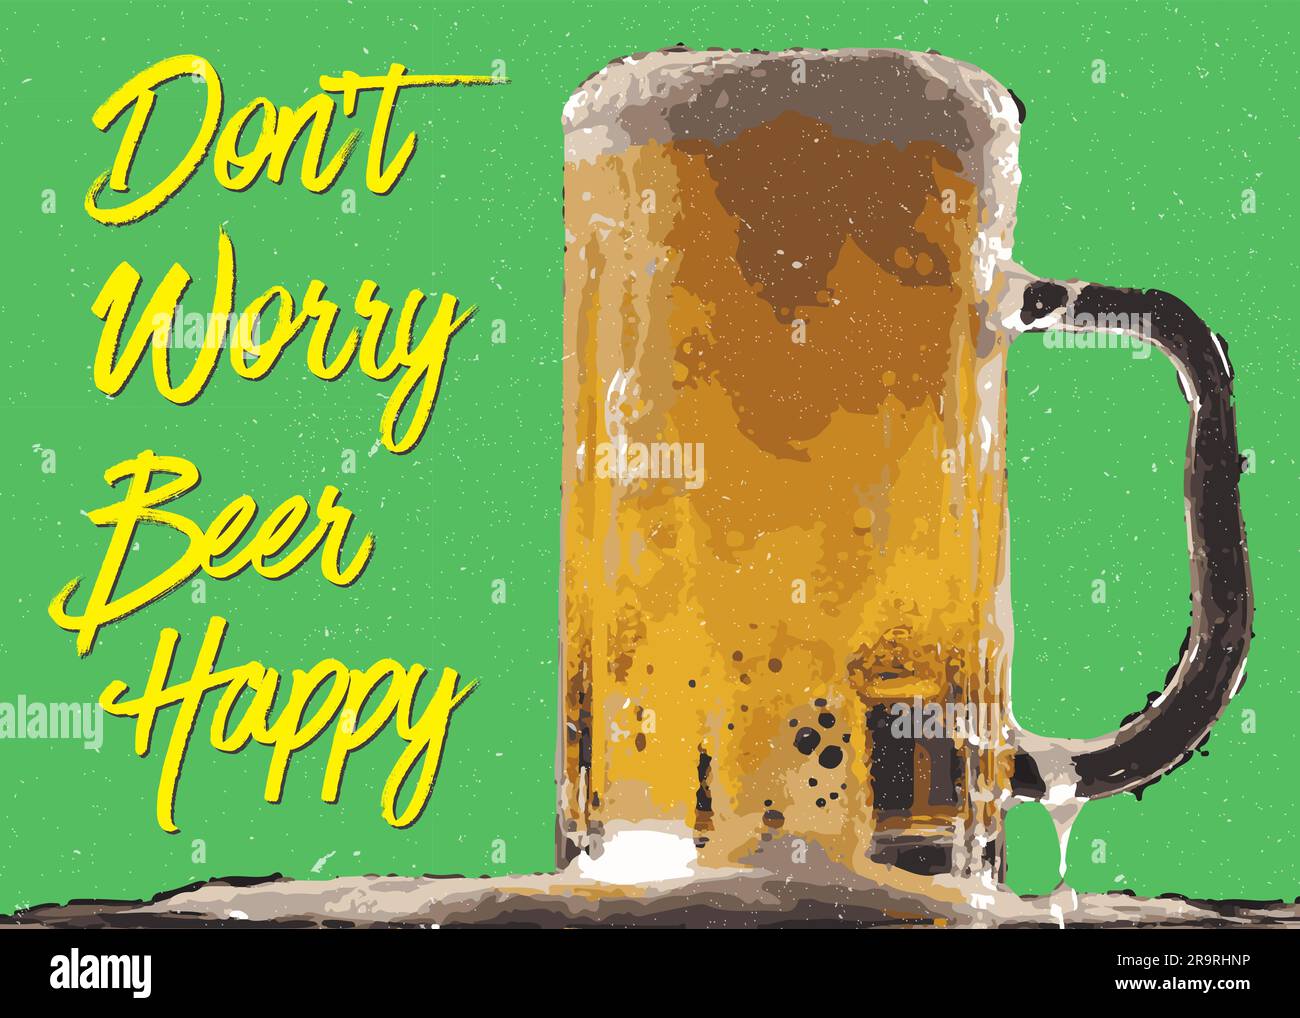 Día Internacional de la cerveza, citas de cerveza, cerveza de amor, diseño de decoración de cerveza, decoración Oktoberfest, cartel de luz de cervecería Ilustración del Vector